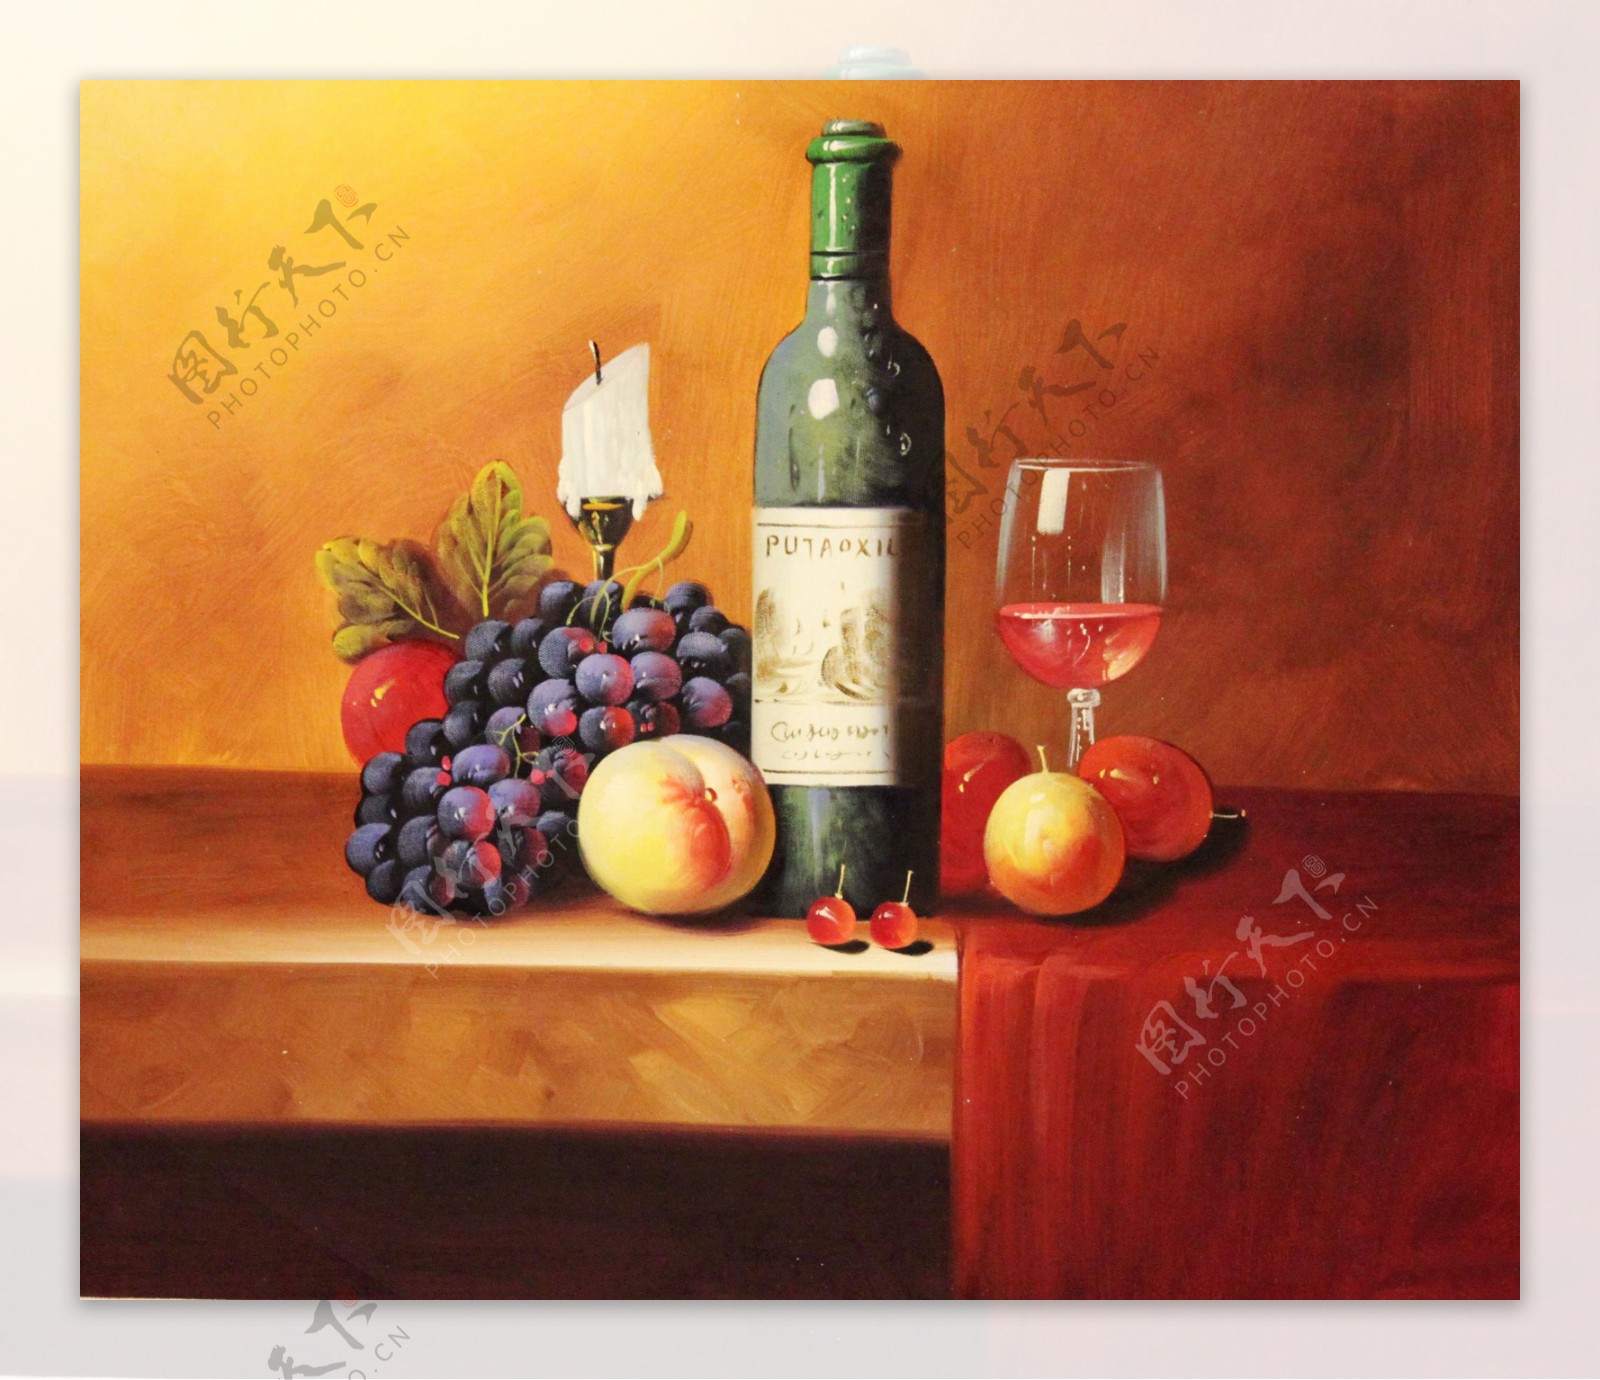 静物水果葡萄酒图片